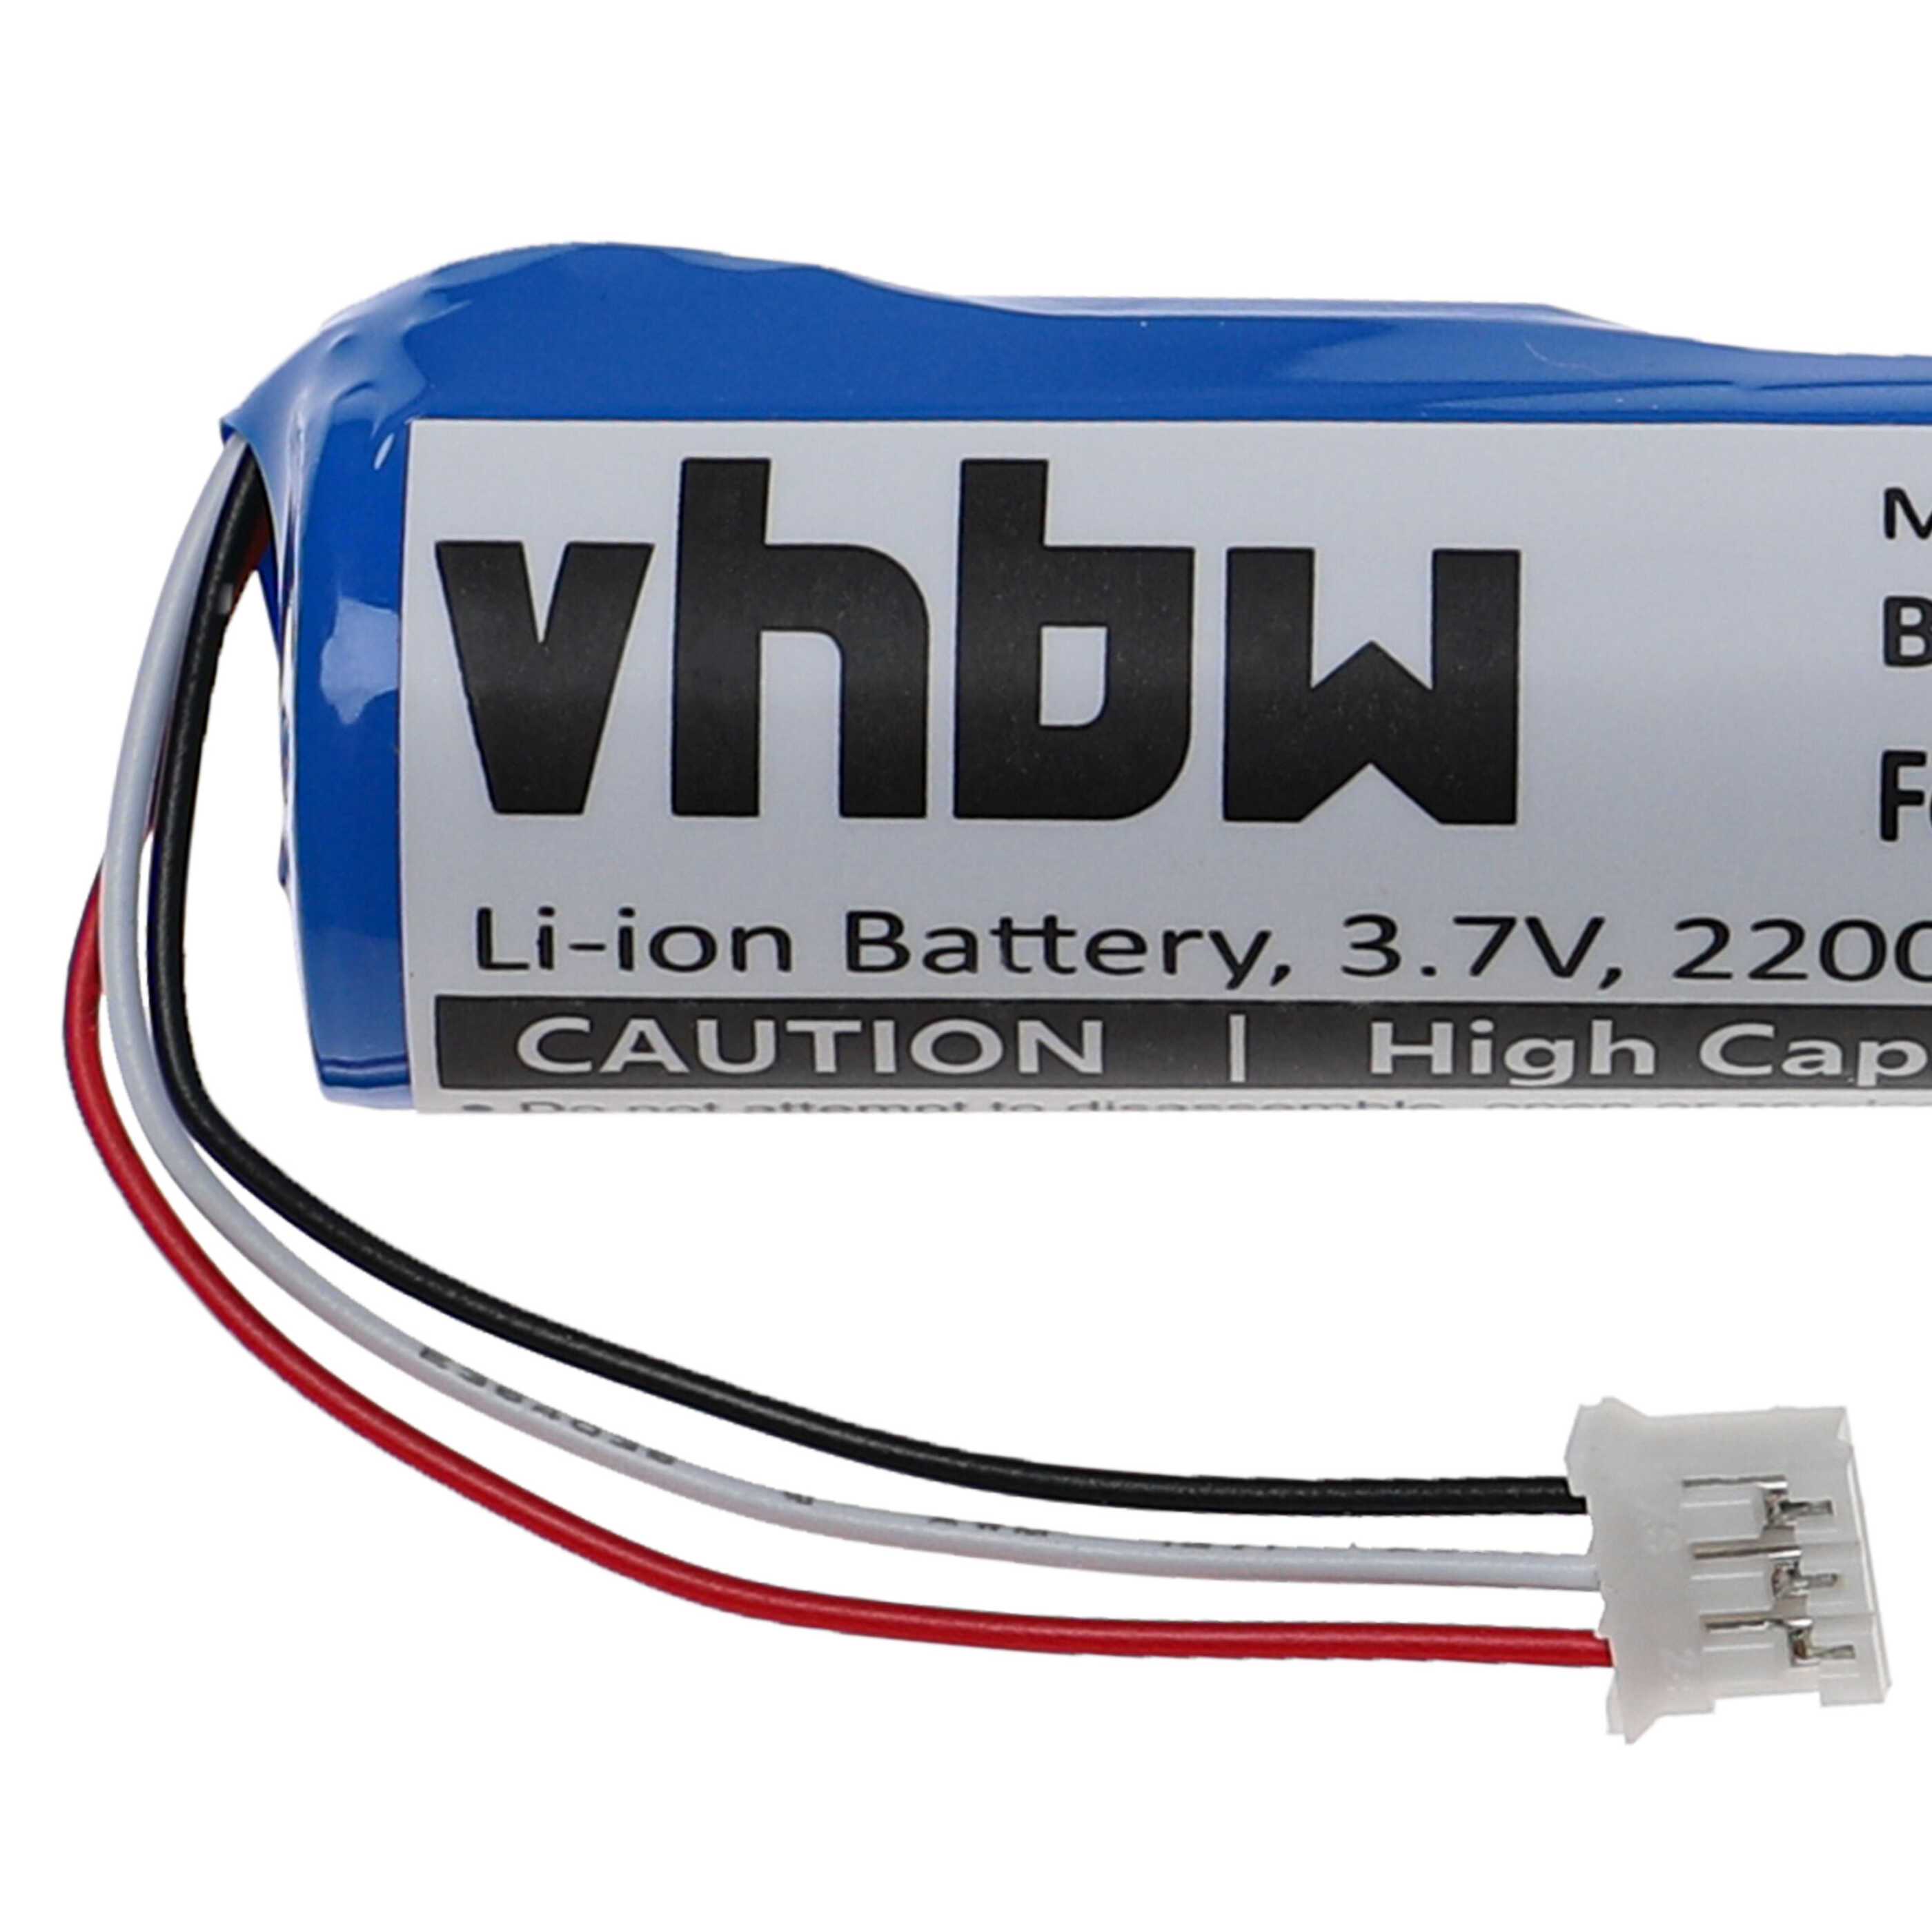 Batteria per telecomando remote controller sostituisce Philips PB9600 Philips - 2200mAh 3,7V Li-Ion